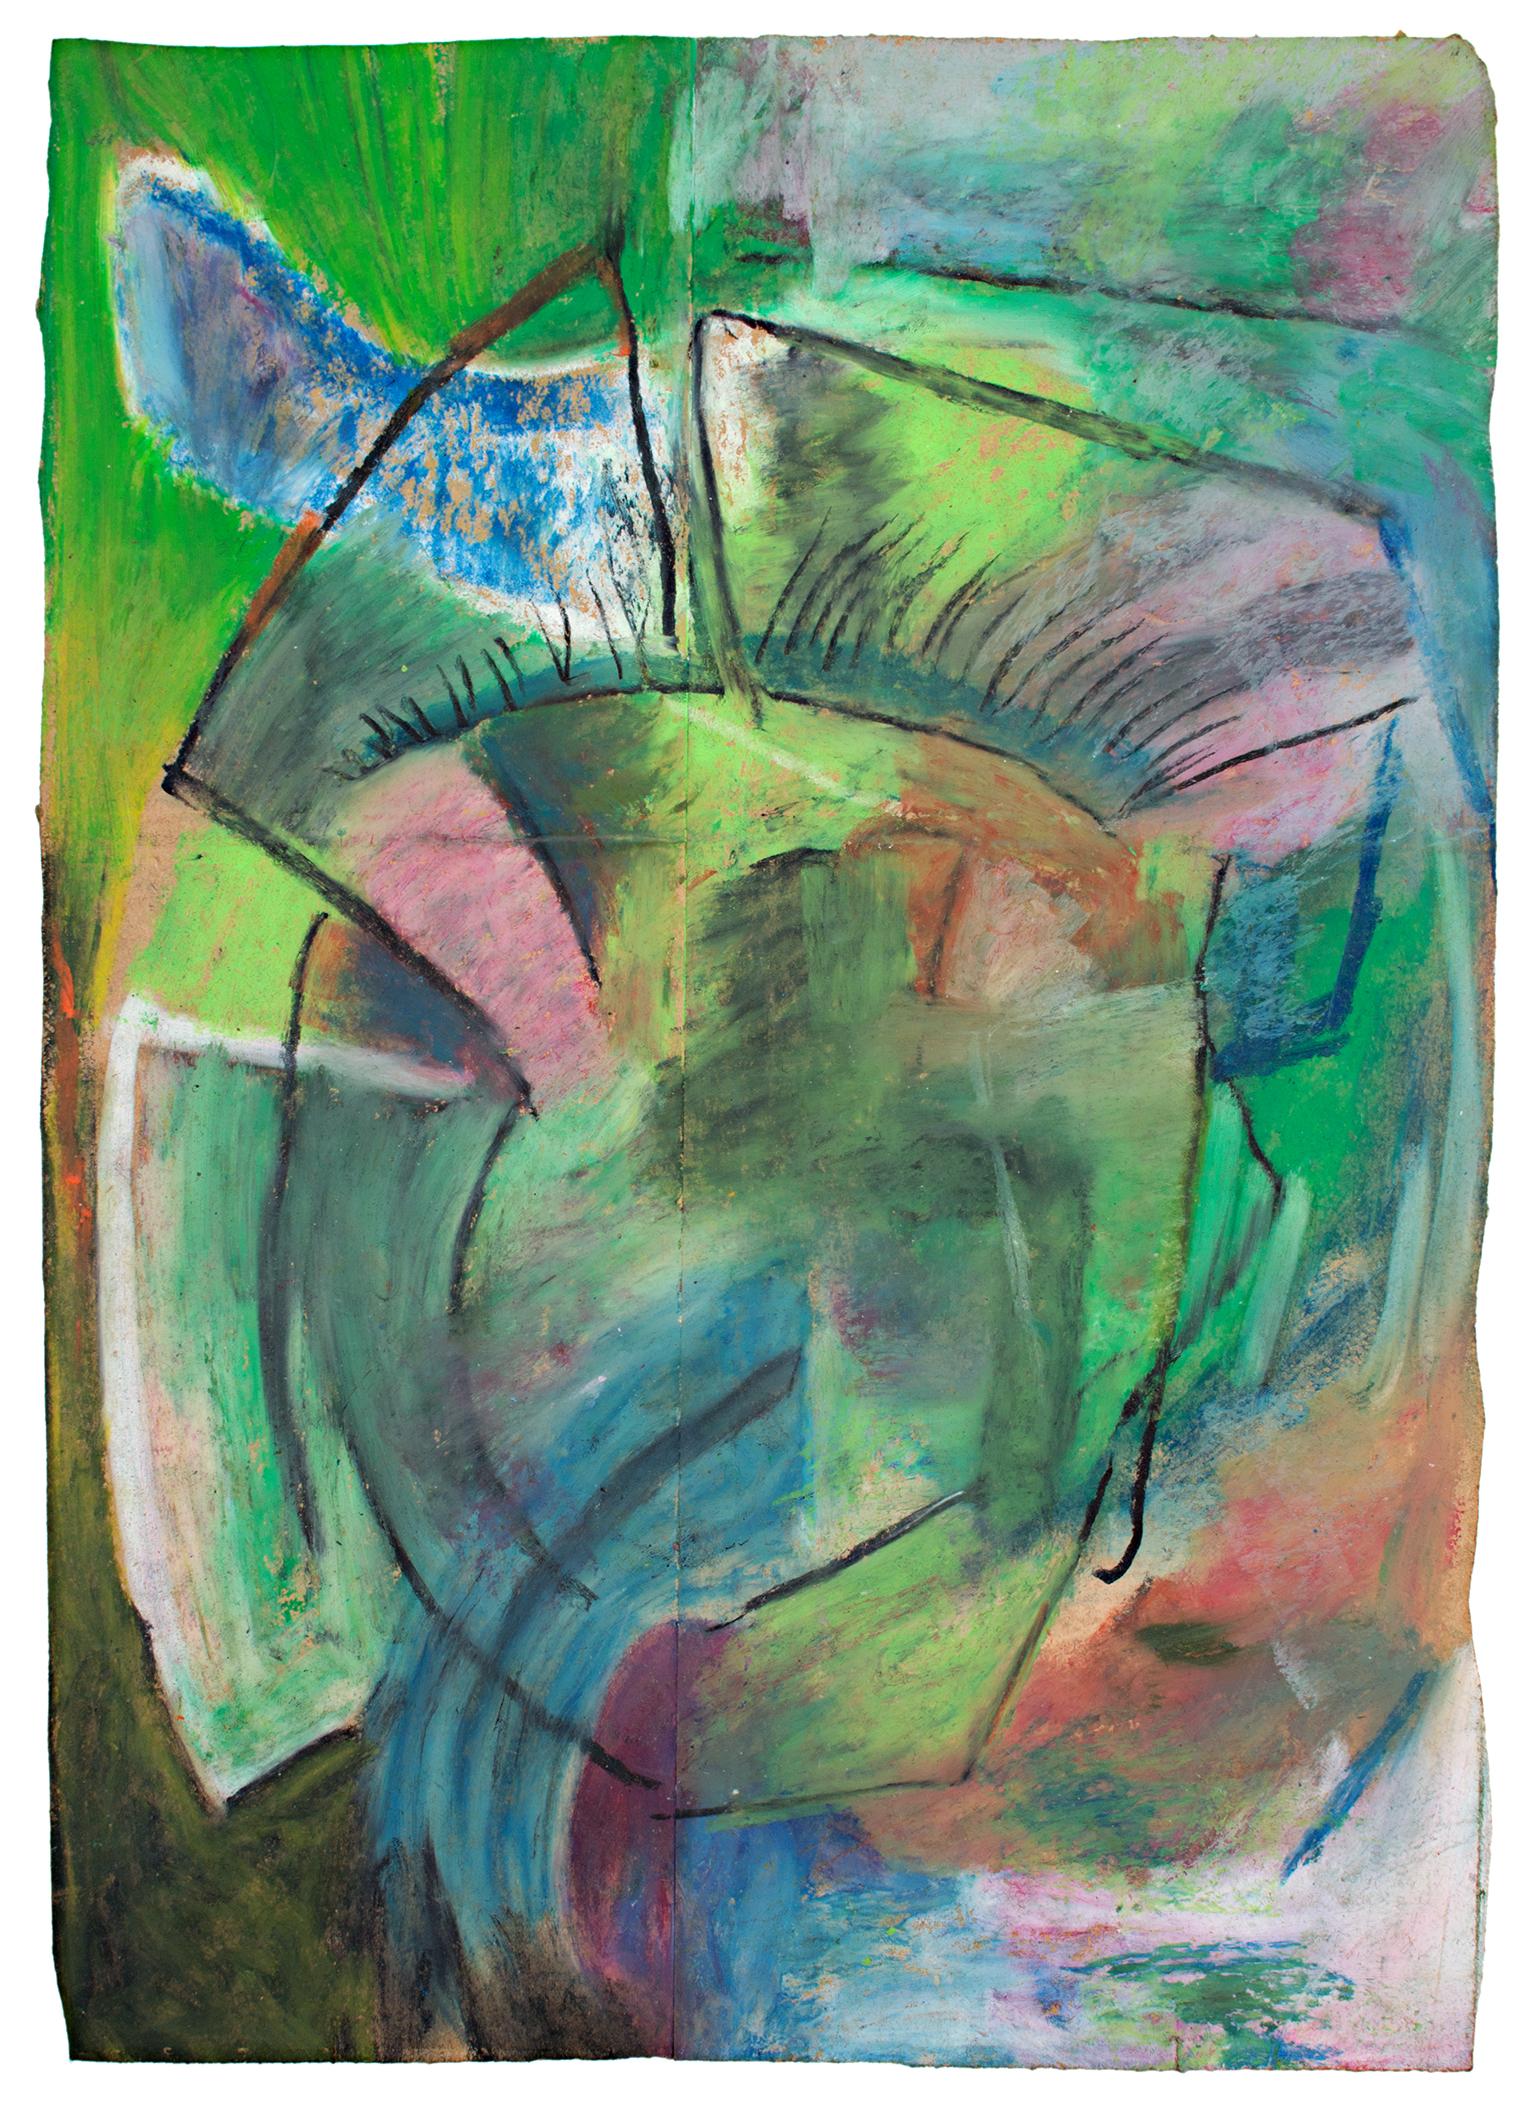 "Scif" est un dessin original au pastel gras sur un sac d'épicerie de Reginald K. Gee. L'artiste a signé l'œuvre au dos. Cette pièce présente des formes et des marques abstraites en vert avec un peu de bleu et de rose. 

16 1/2" x 11 3/4"